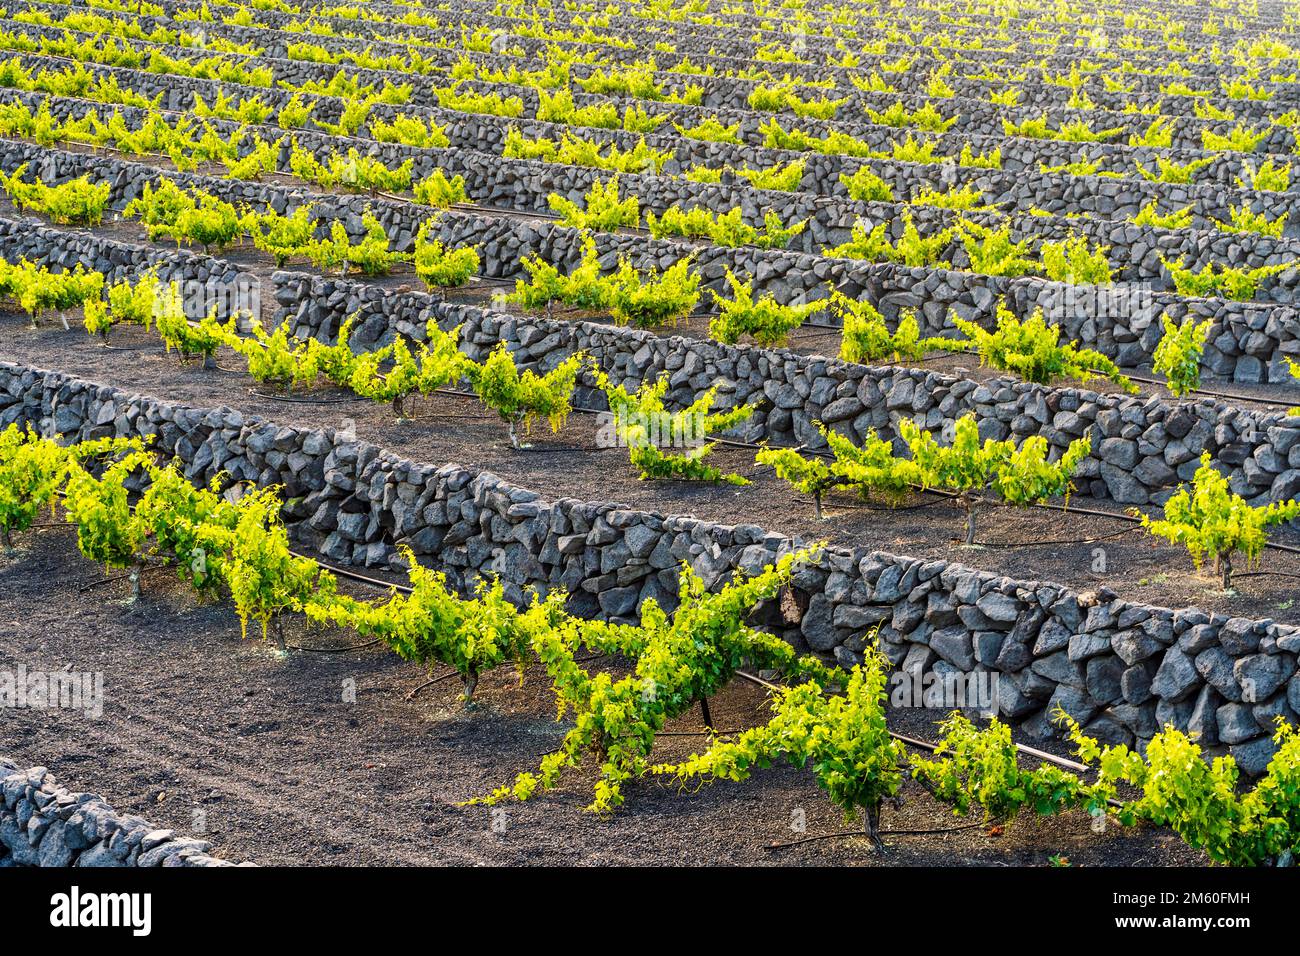 Grapevine sur sol volcanique noir dans les vignobles de la Geria, Lanzarote, îles Canaries, Espagne Banque D'Images